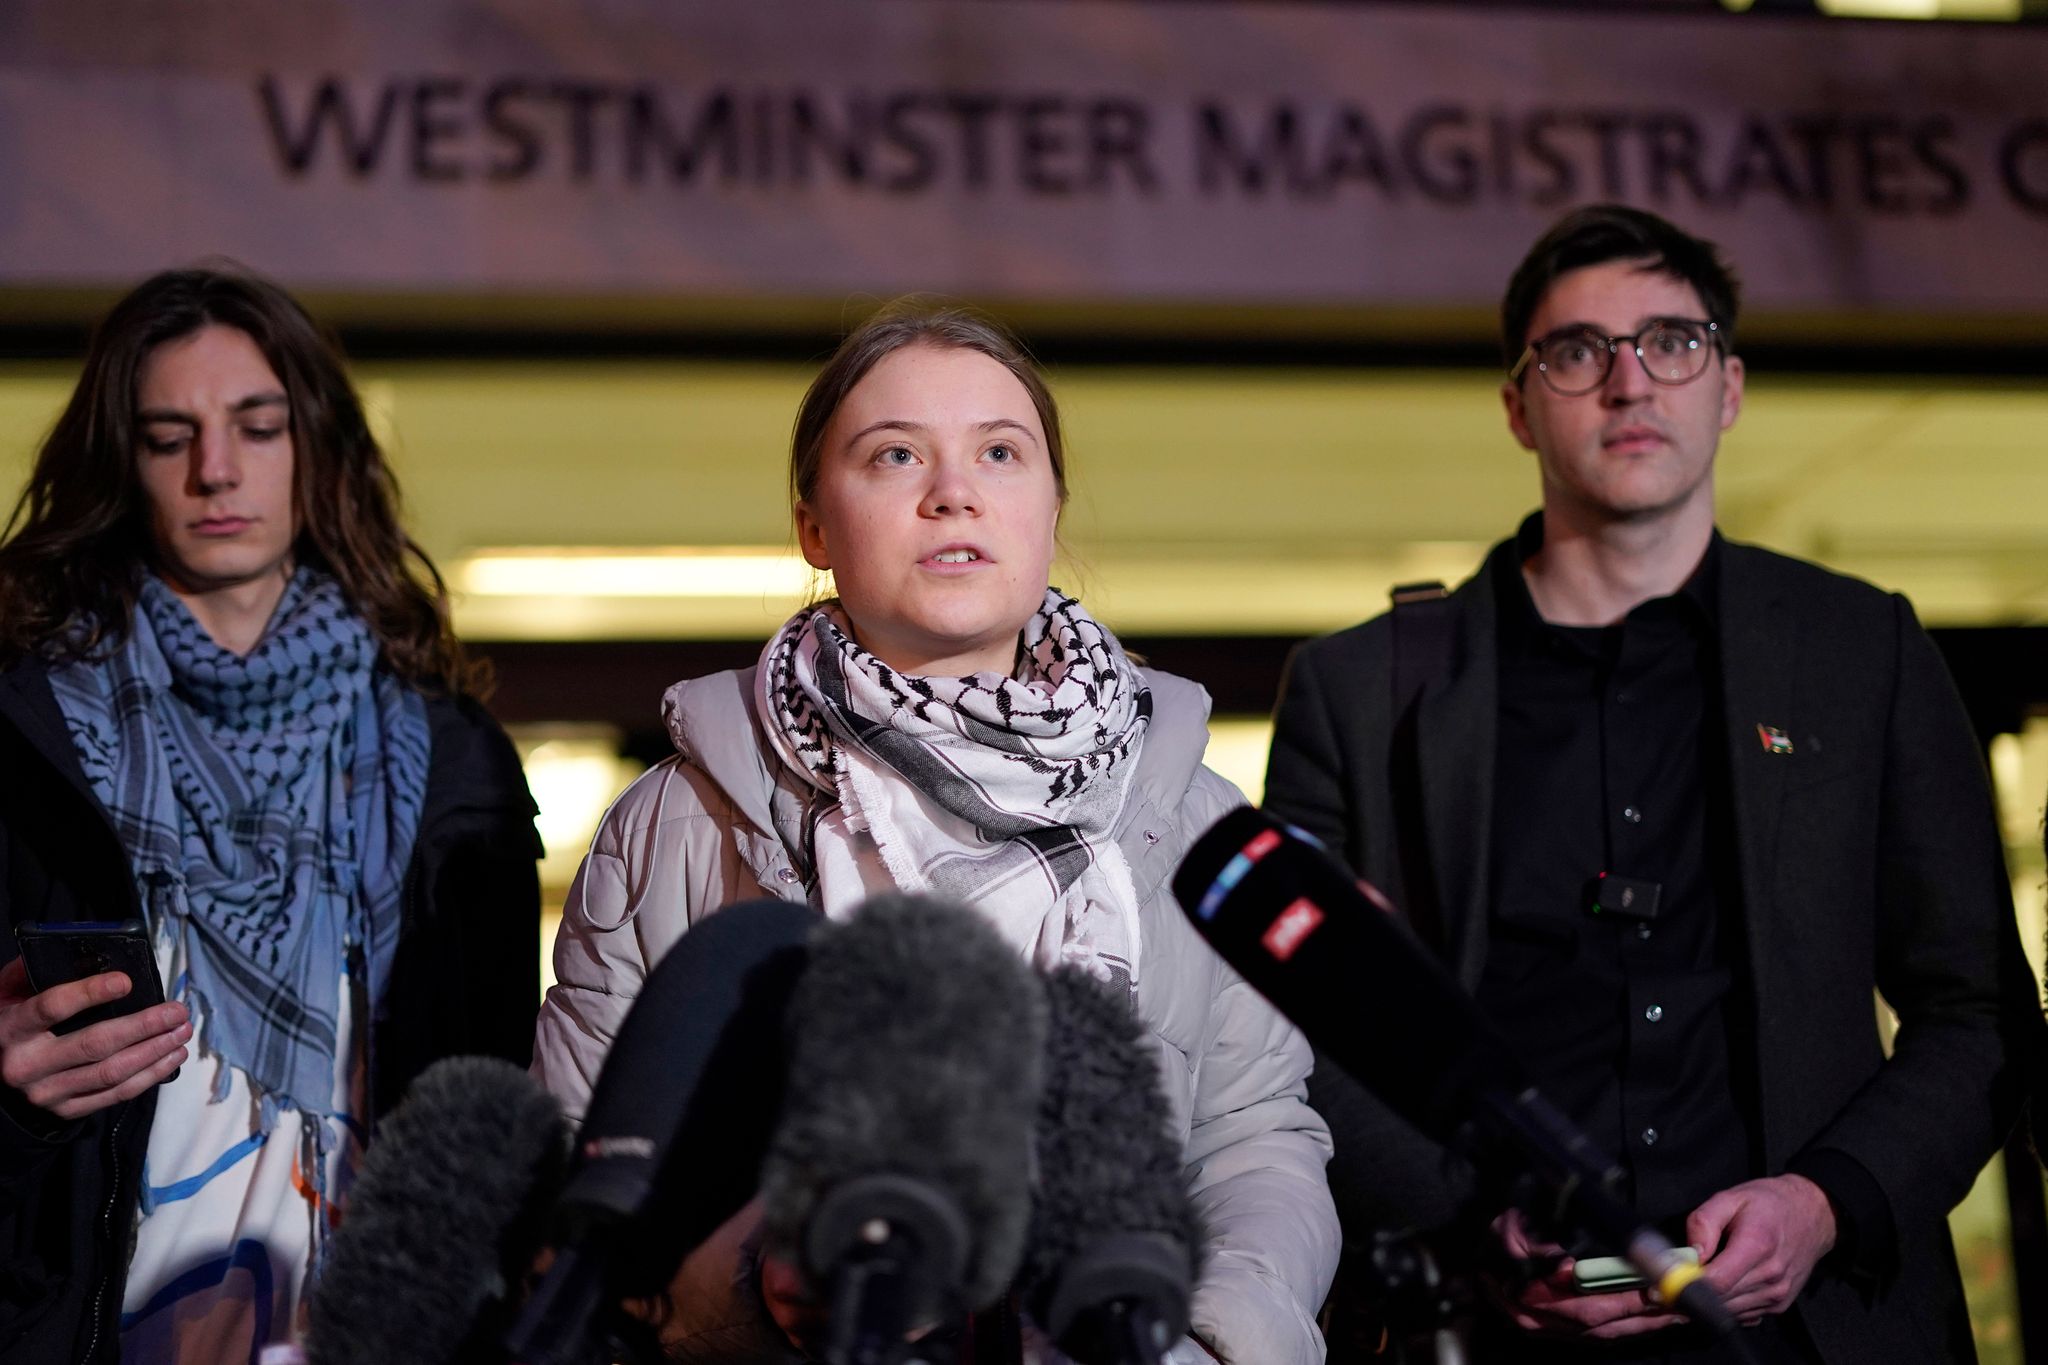 Die Klimaaktivistin Greta Thunberg spricht nach Prozessauftakt vor dem Westminster Magistrates Court in London zu Journalisten. Ihr wird Störung der öffentlichen Ordnung vorgeworfen.